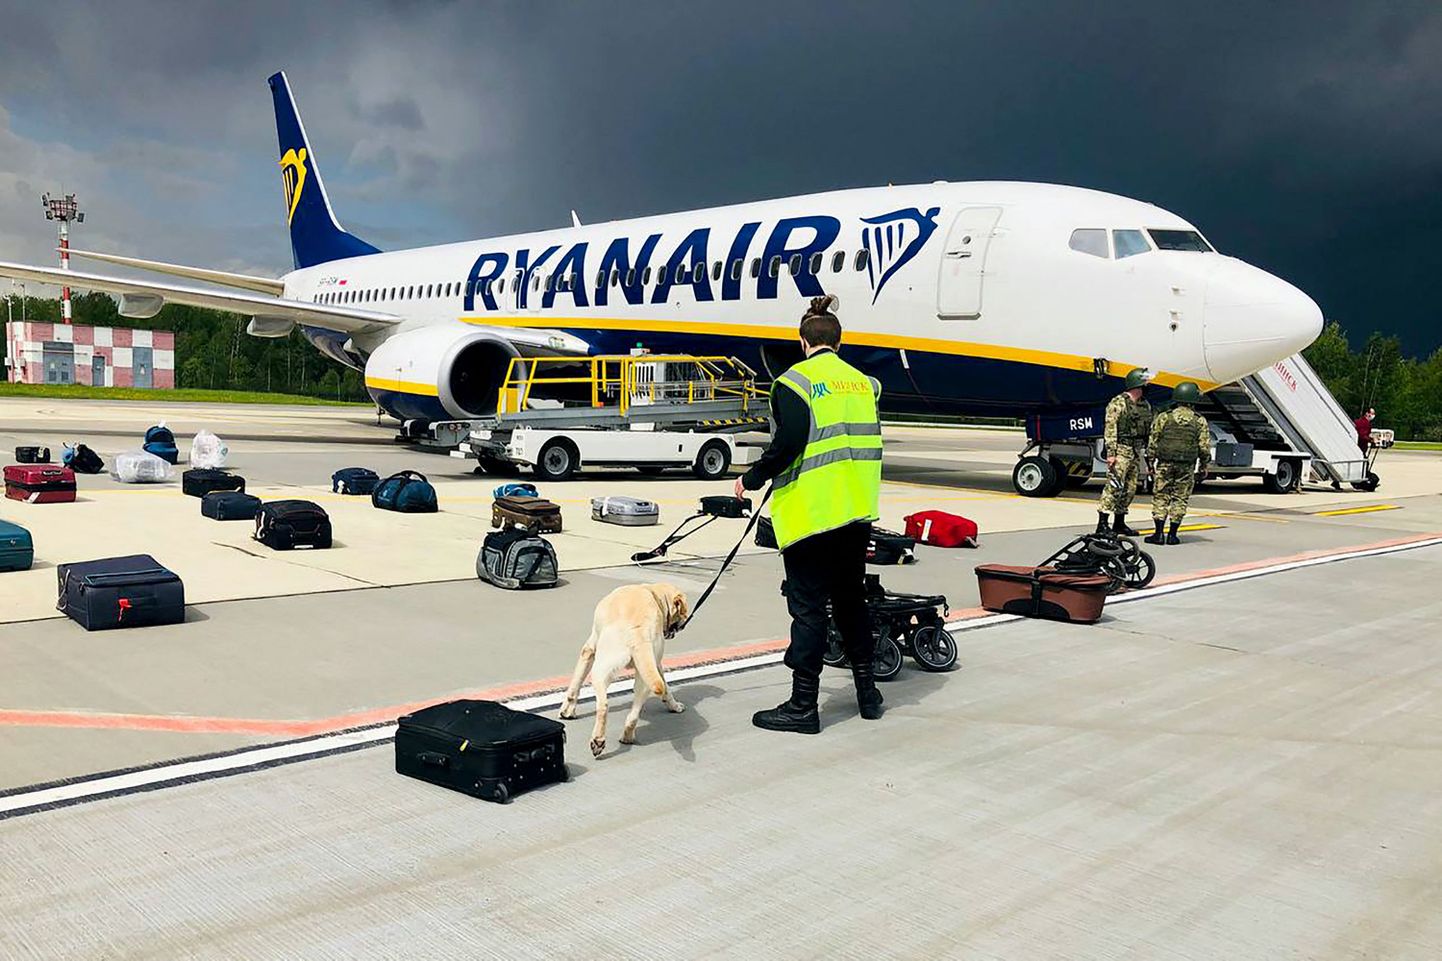 Ryanairi lennuk, mis lendas Ateenast  Vilniusse, kuid pidi tegema vahemaandumise Minskis